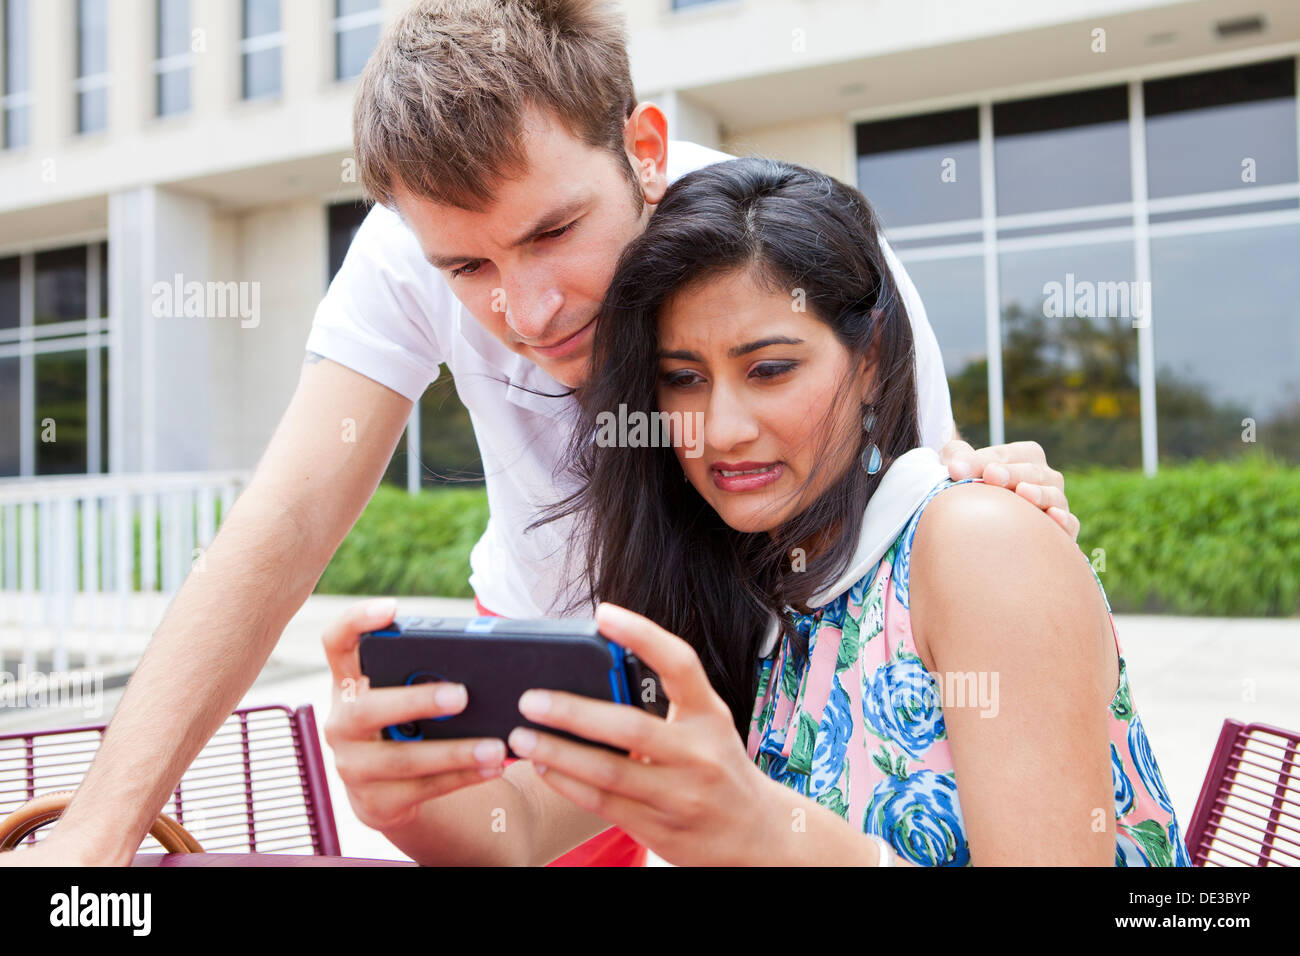 Interesados pareja joven busca en el teléfono inteligente. Foto de stock